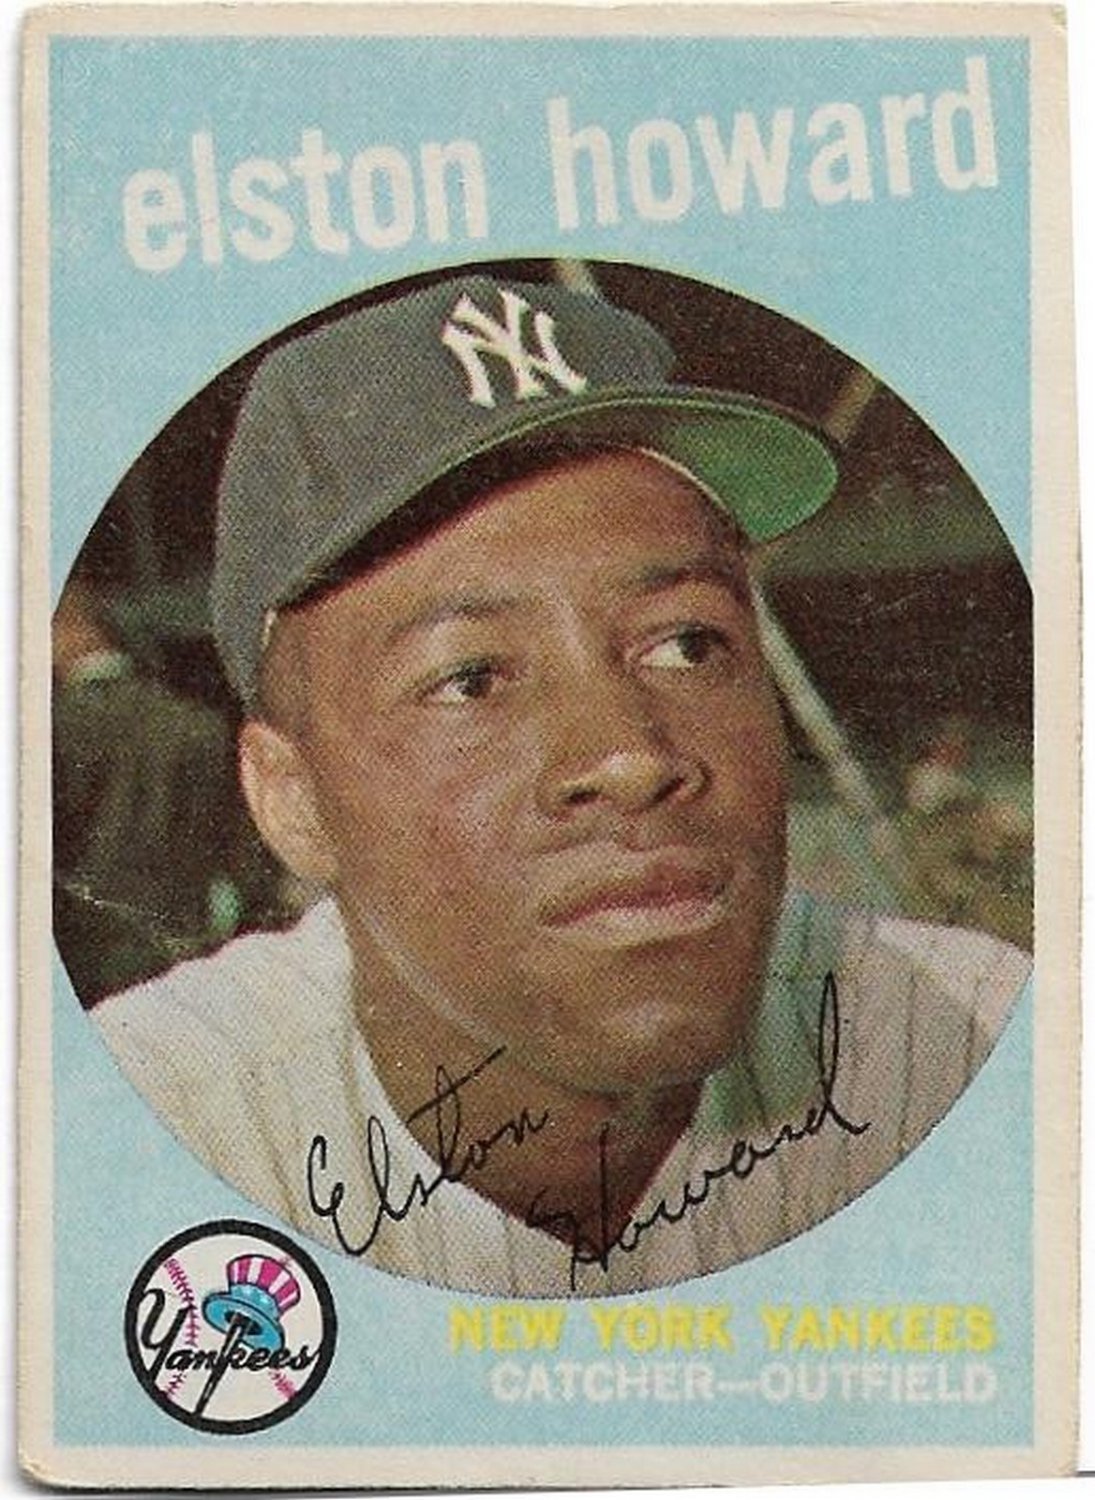 1959 Topps Baseball Card #395 Elston Howard New York Yankees Good